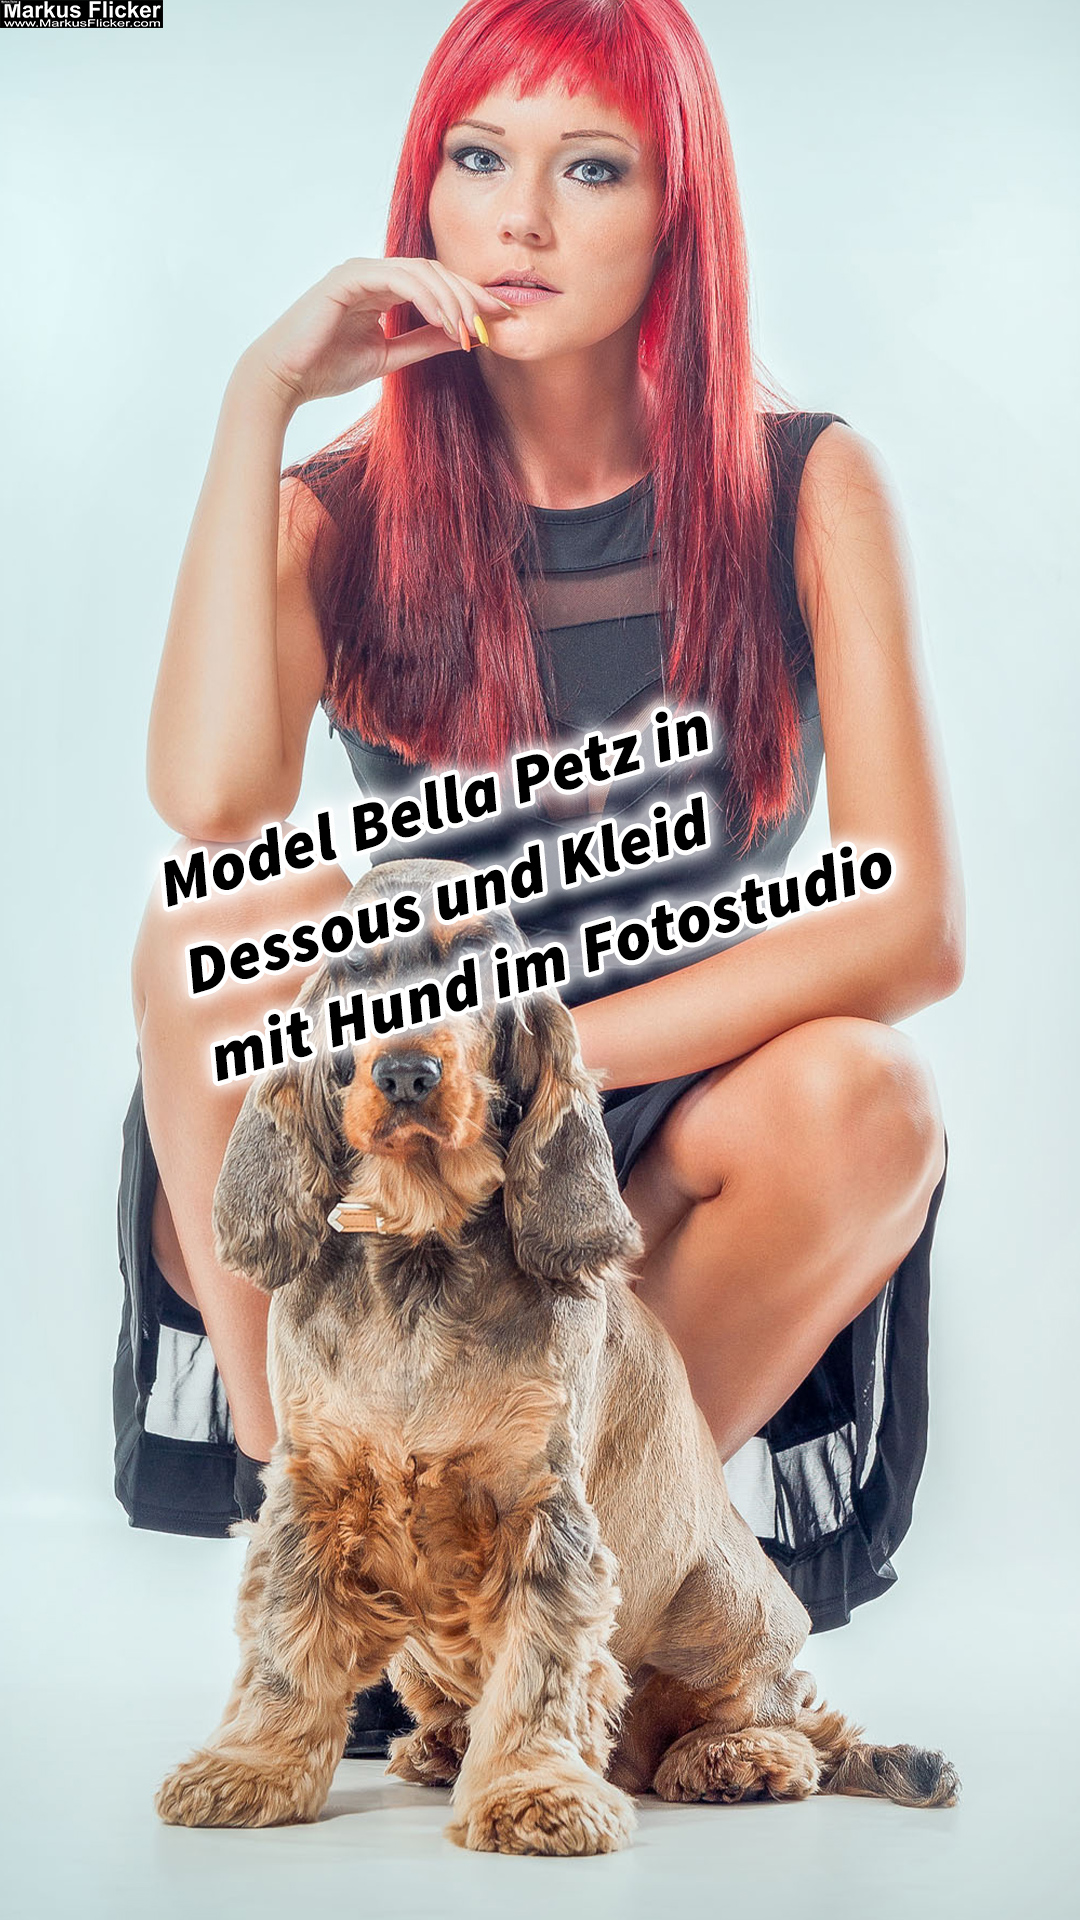 Model Bella Petz in Dessous und Kleid mit Hund im Fotostudio